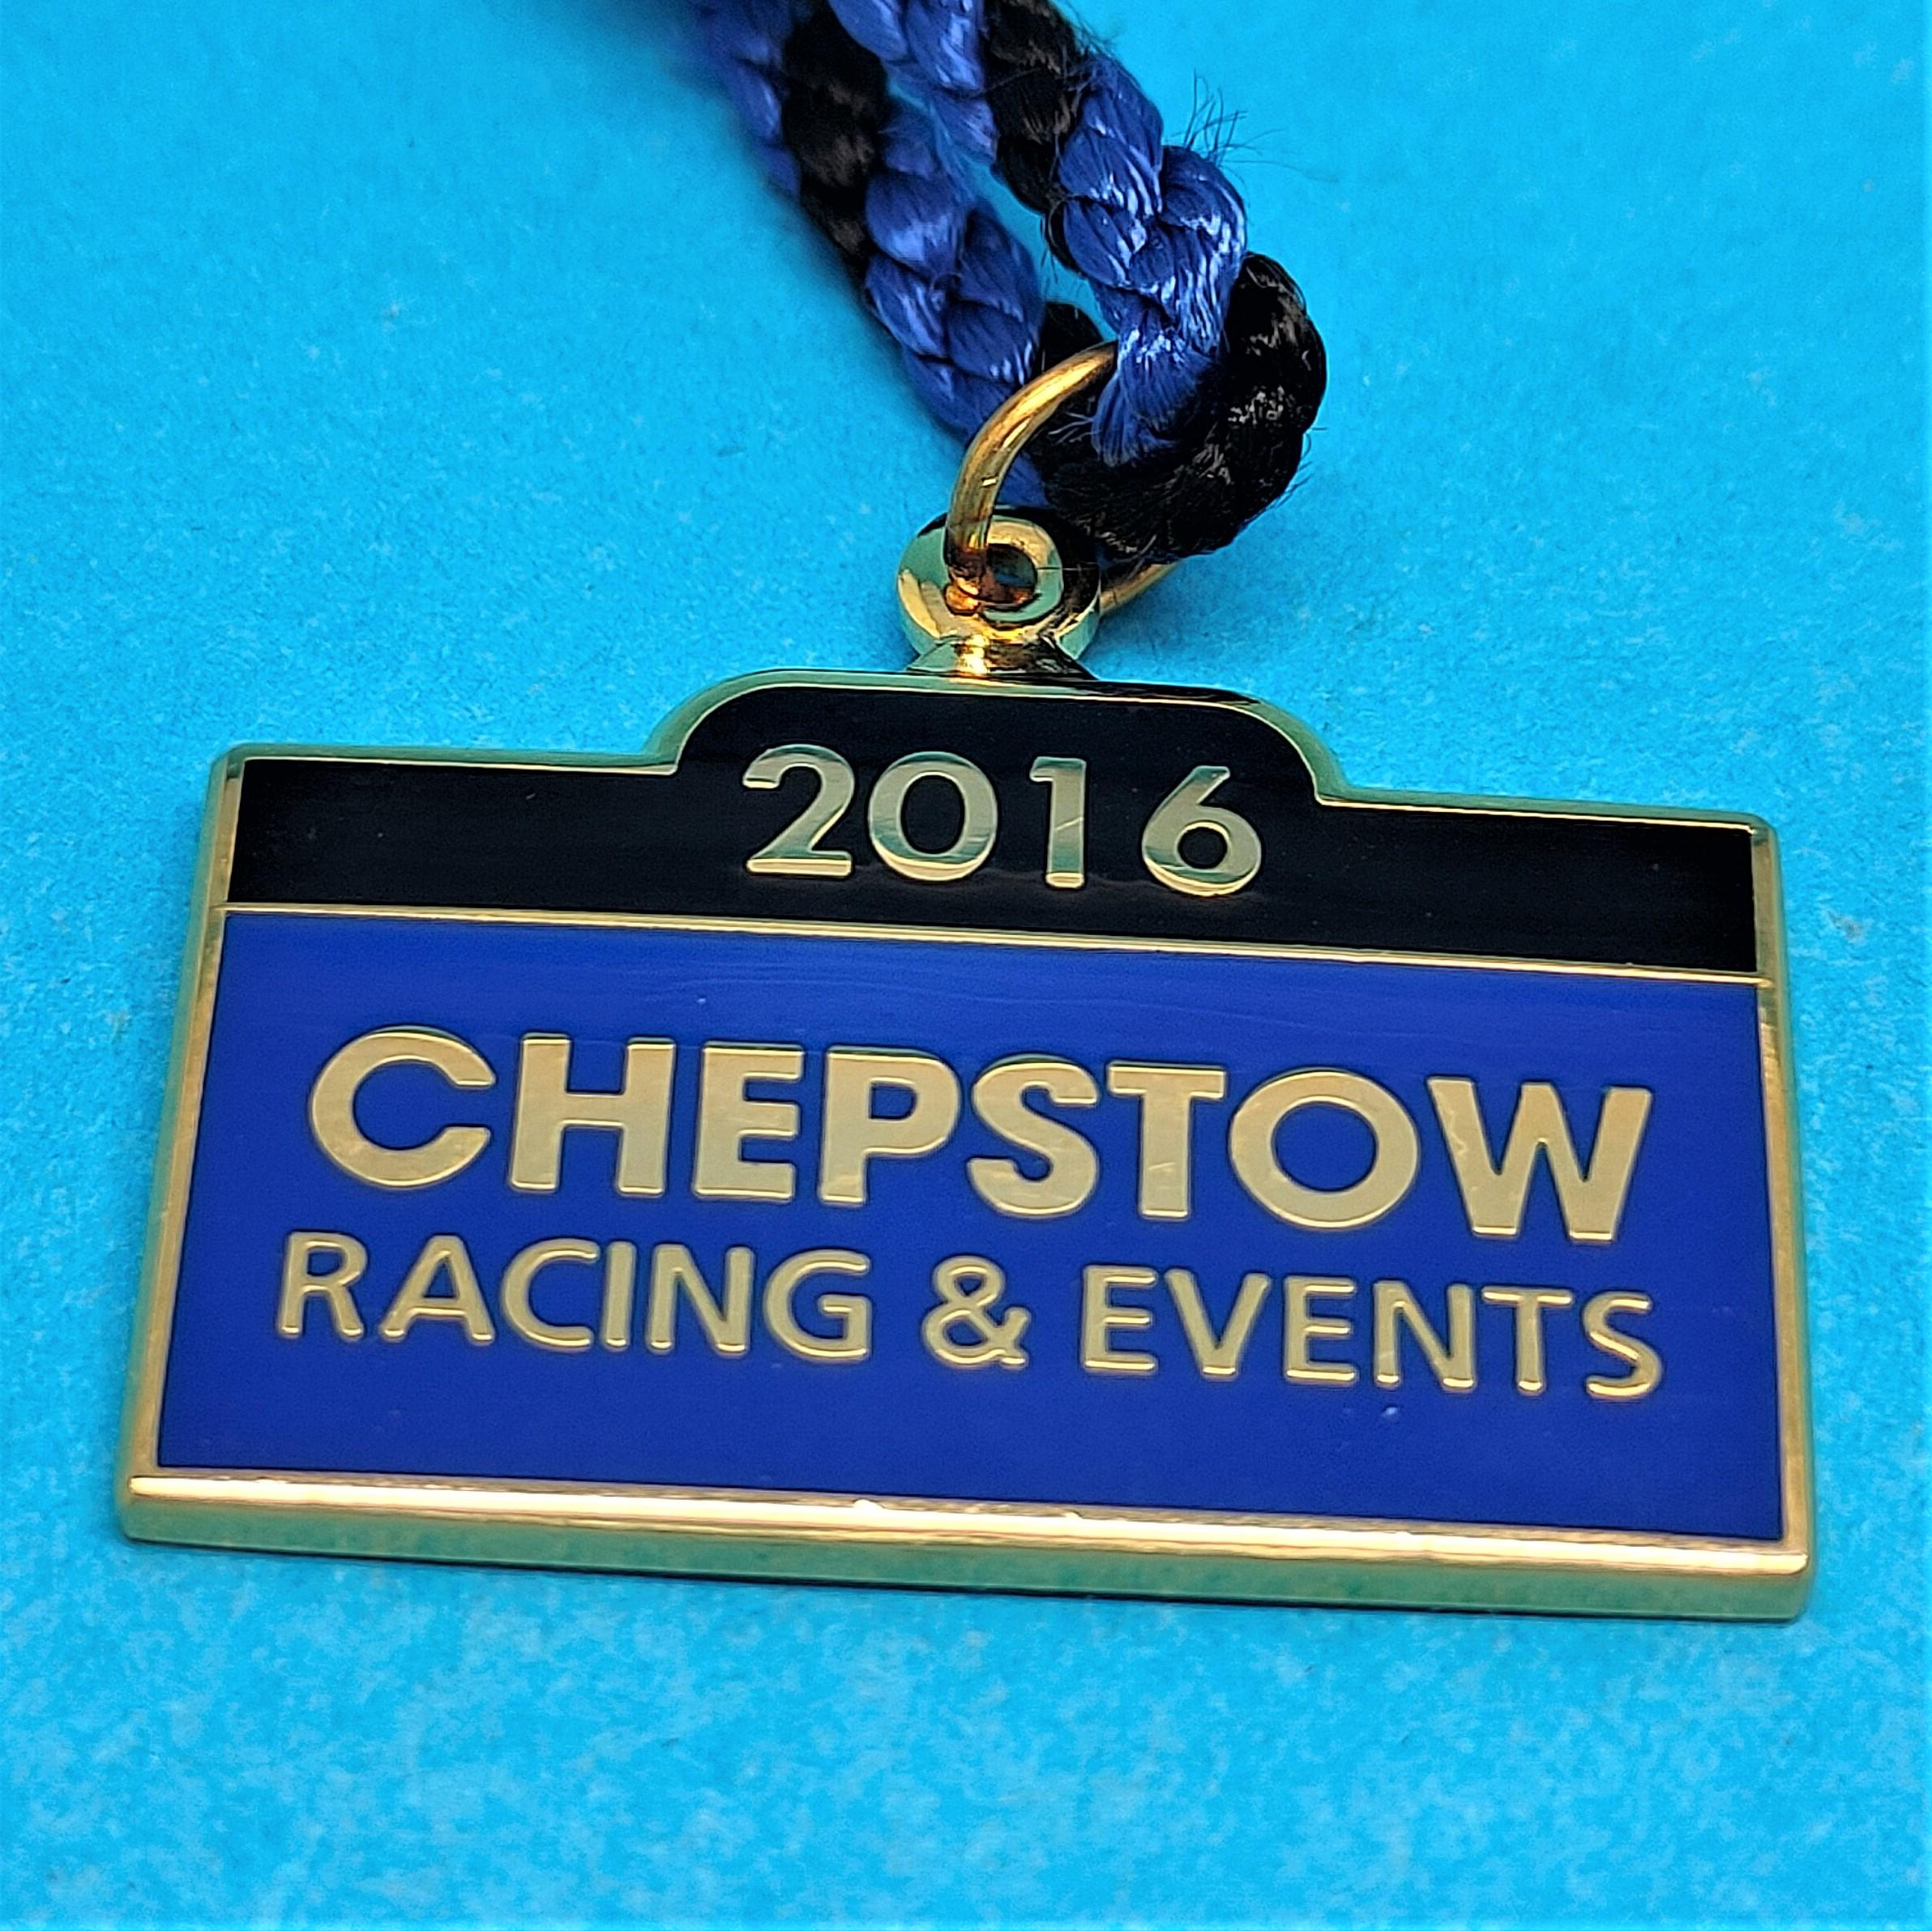 Chepstow 2016